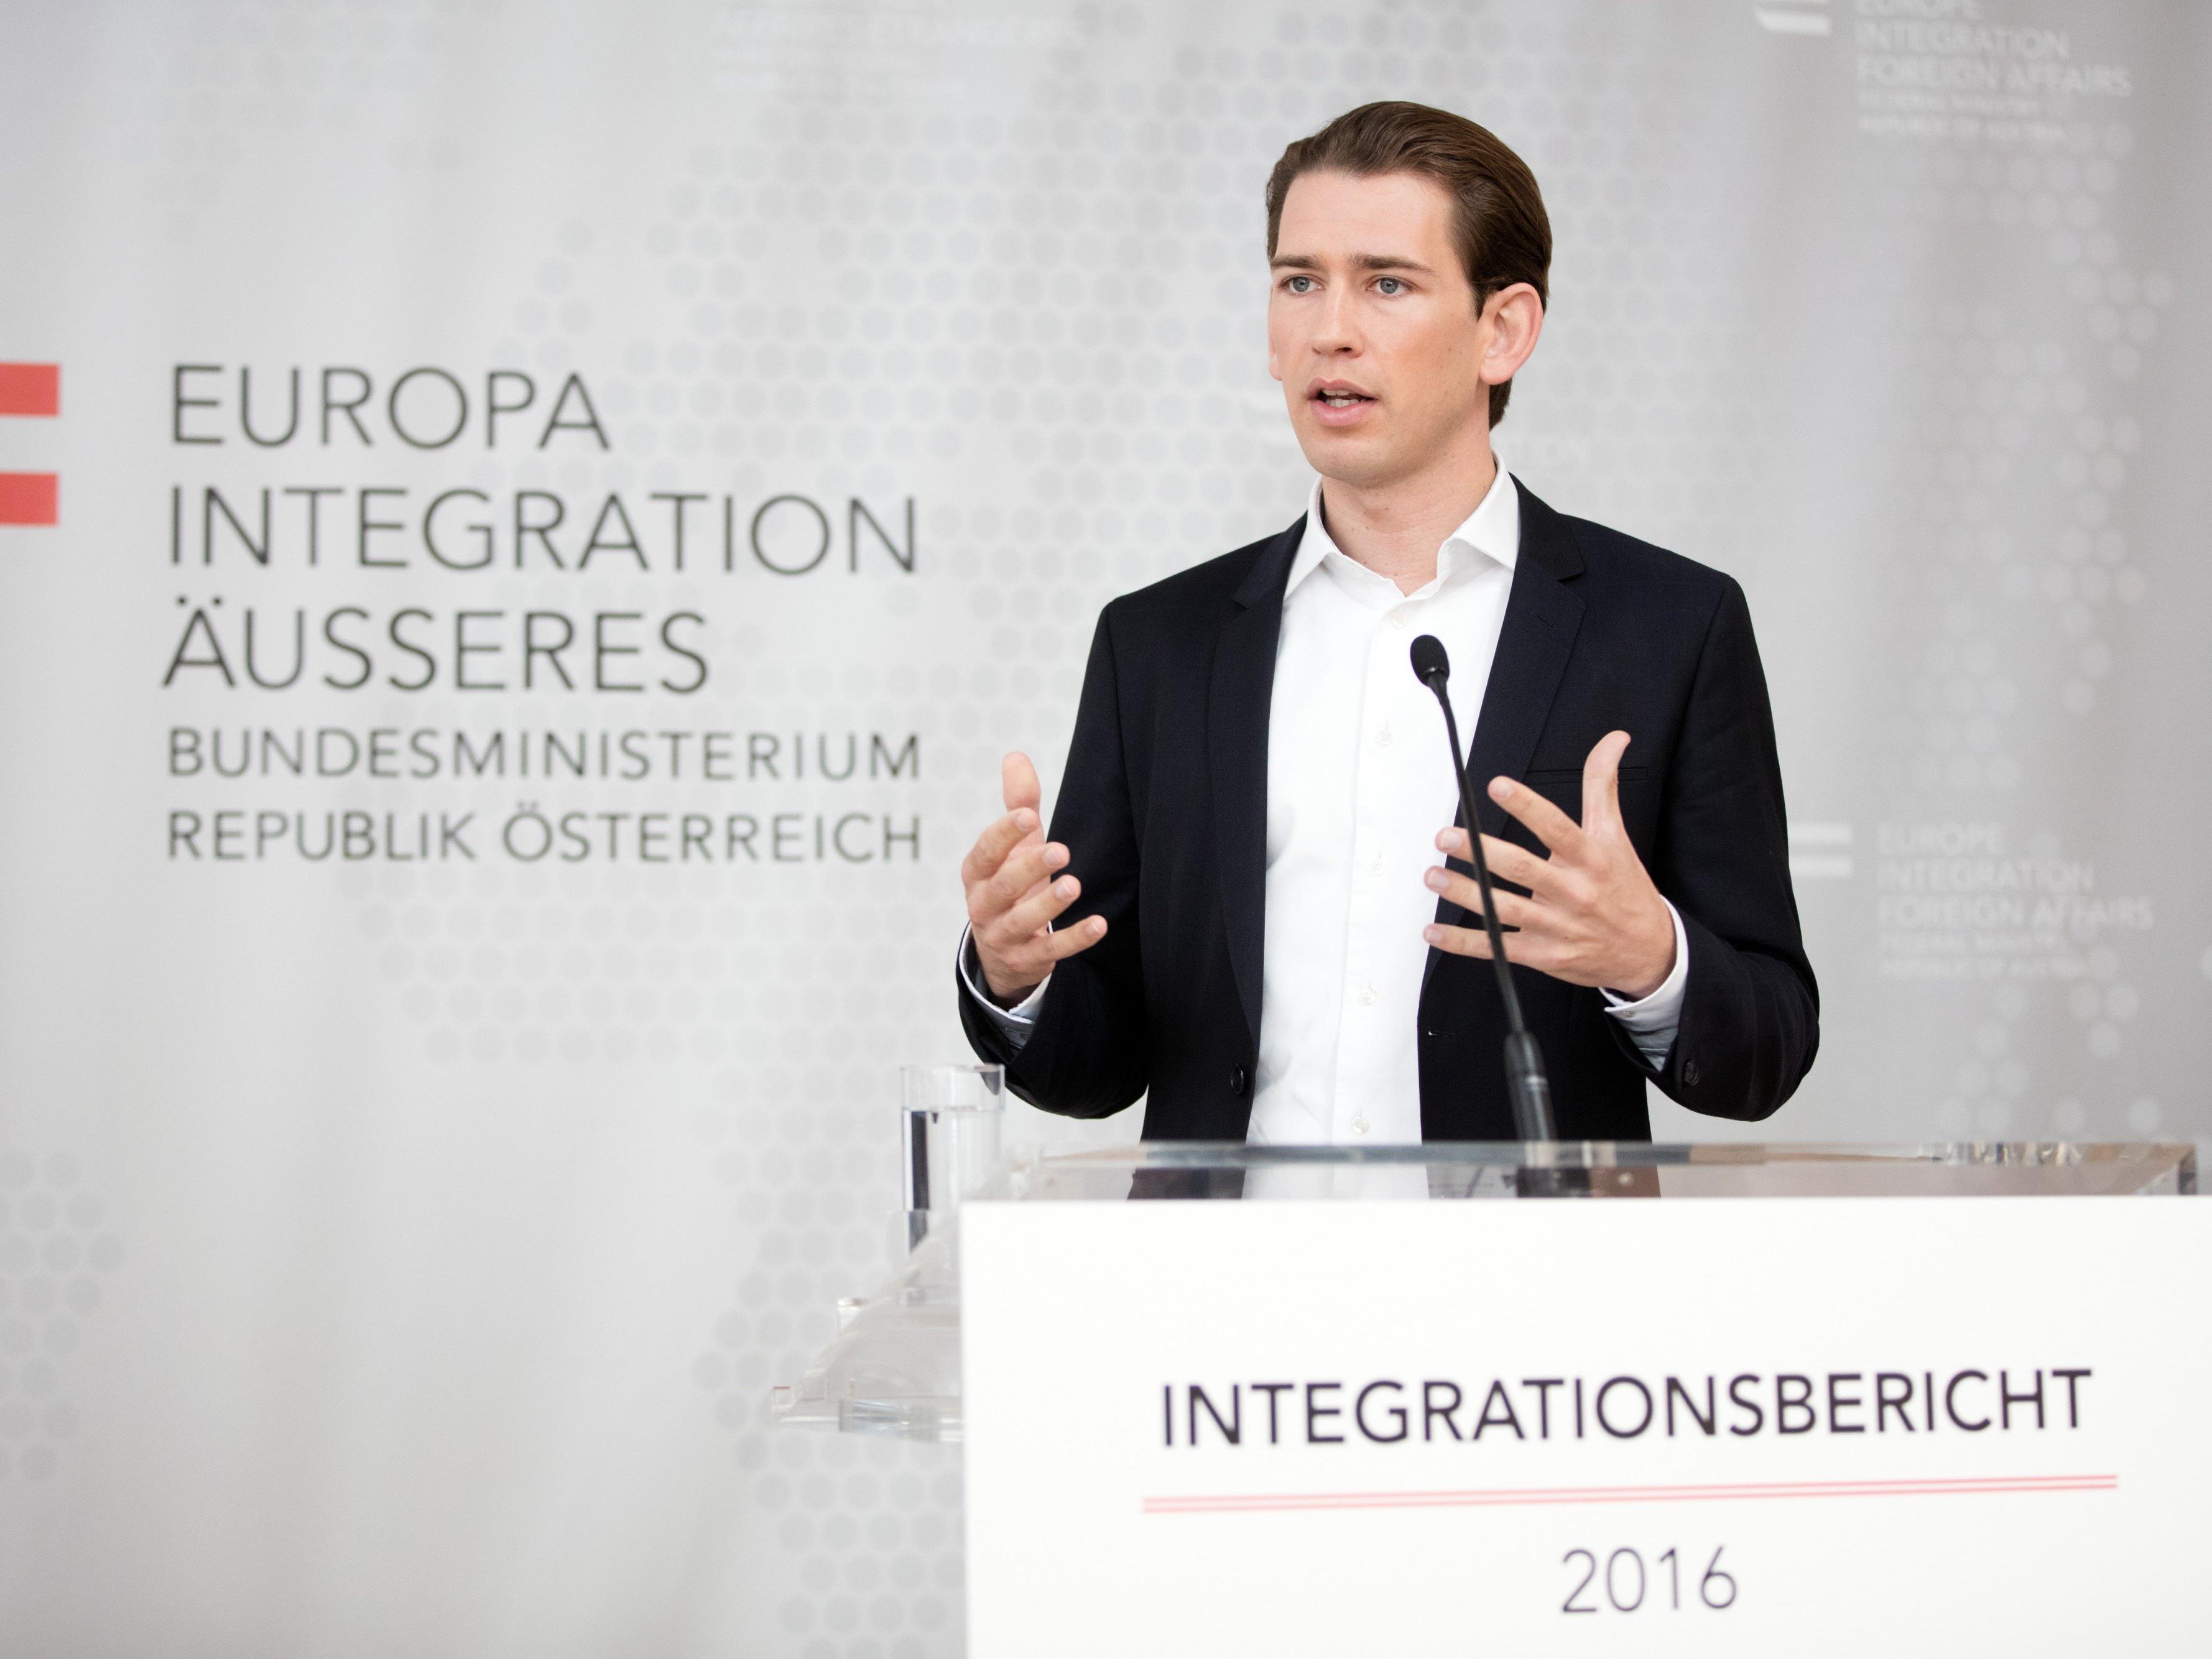 Bewerten Sie die österreichische Integrationspolitik als erfolgreich?